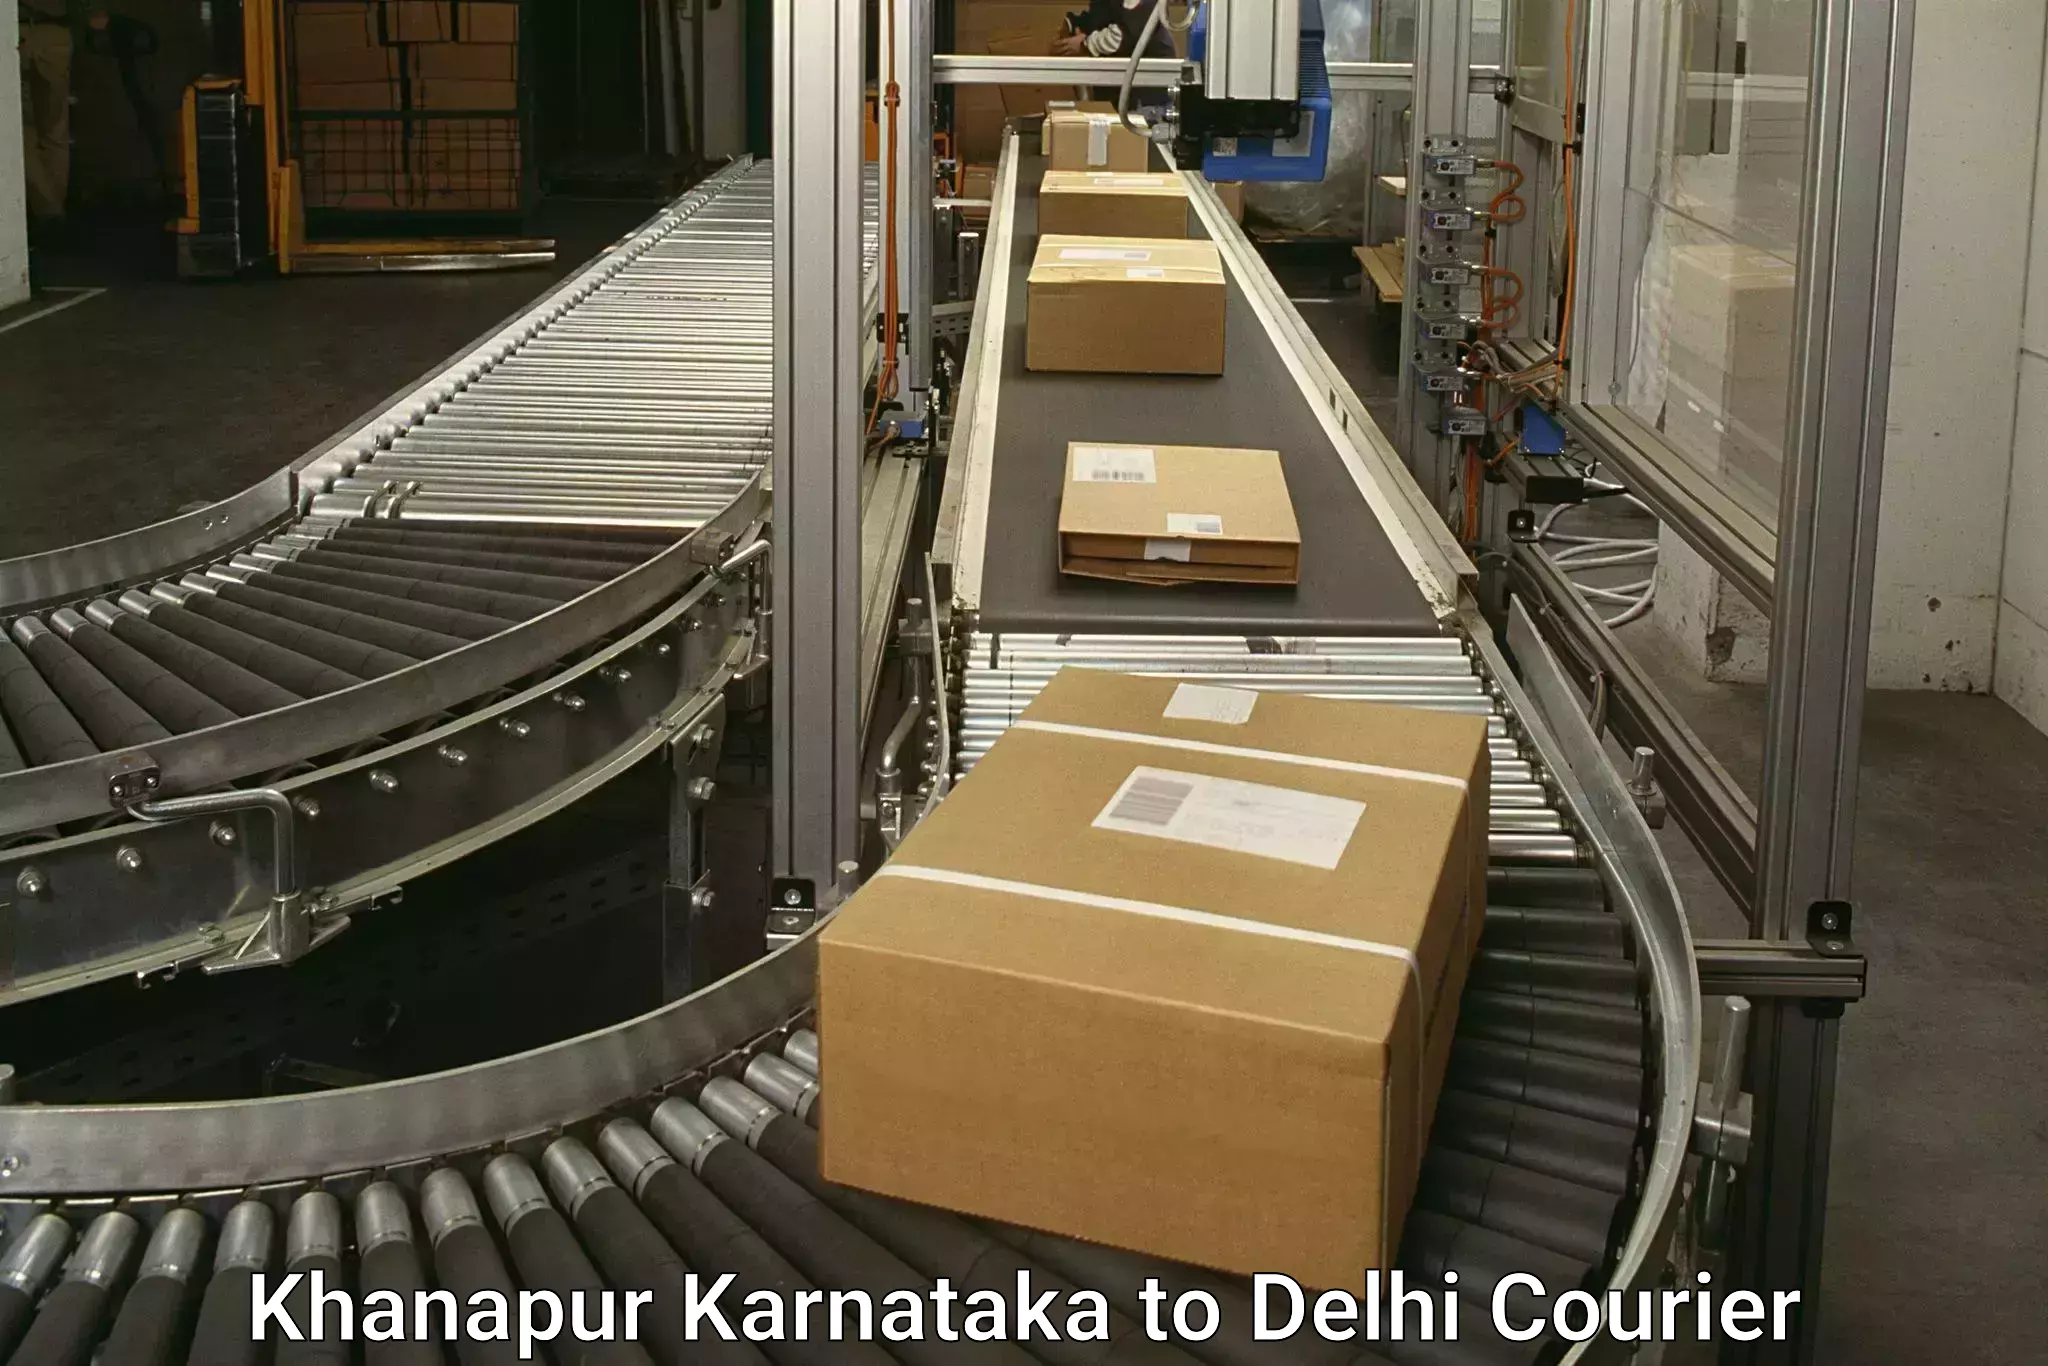 Express courier facilities Khanapur Karnataka to NCR